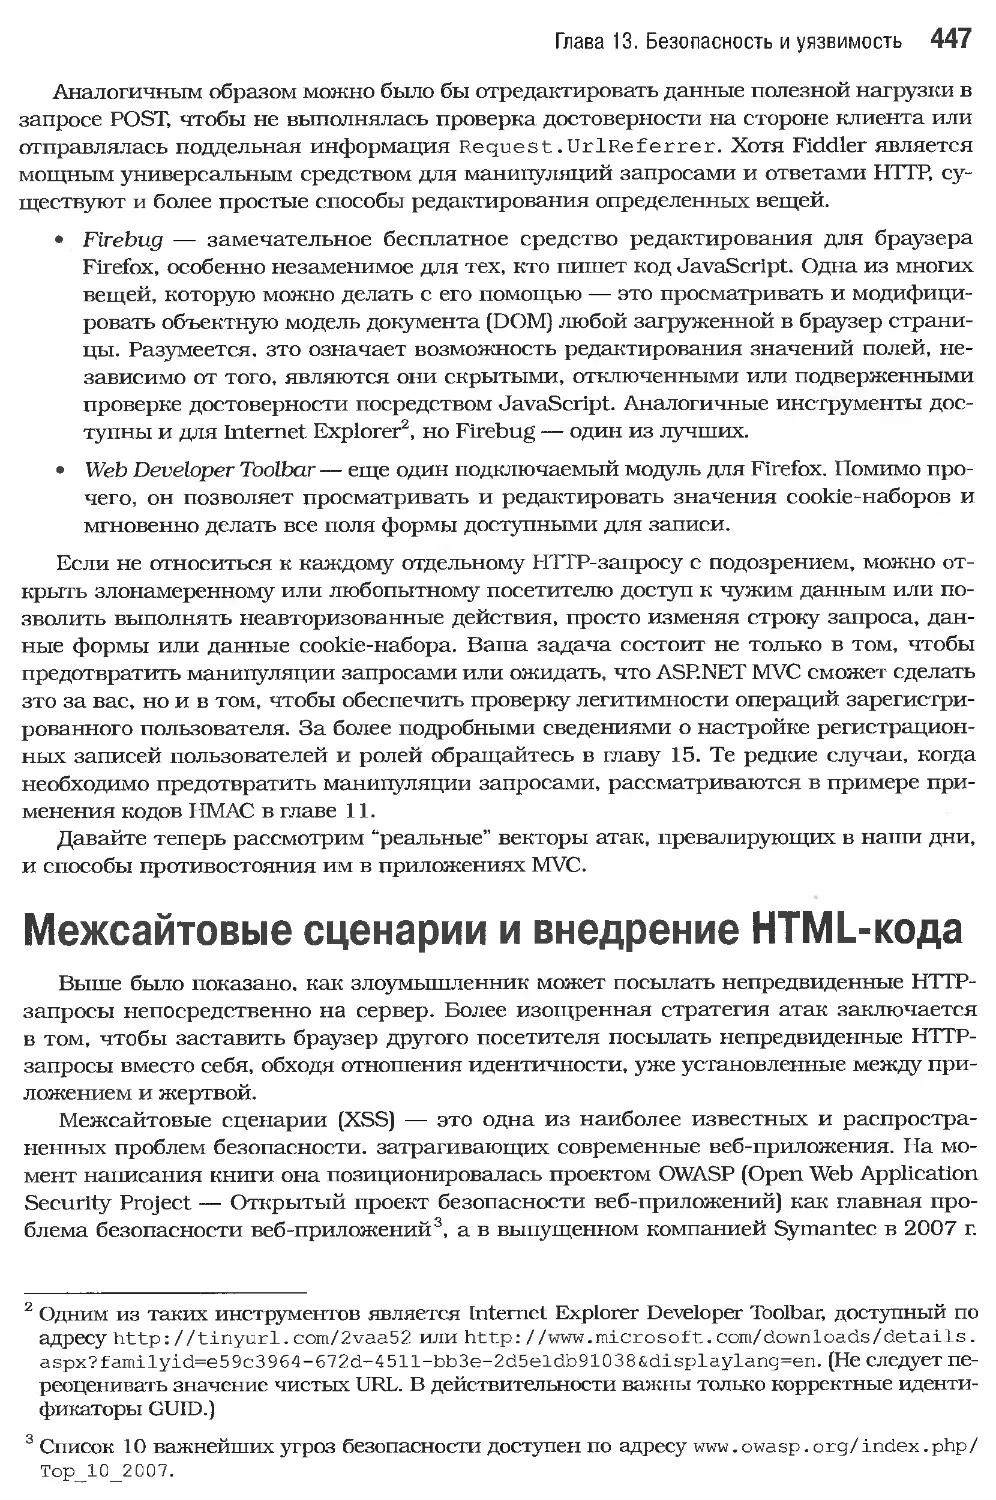 Межсайтовые сценарии и внедрение HTML-кода